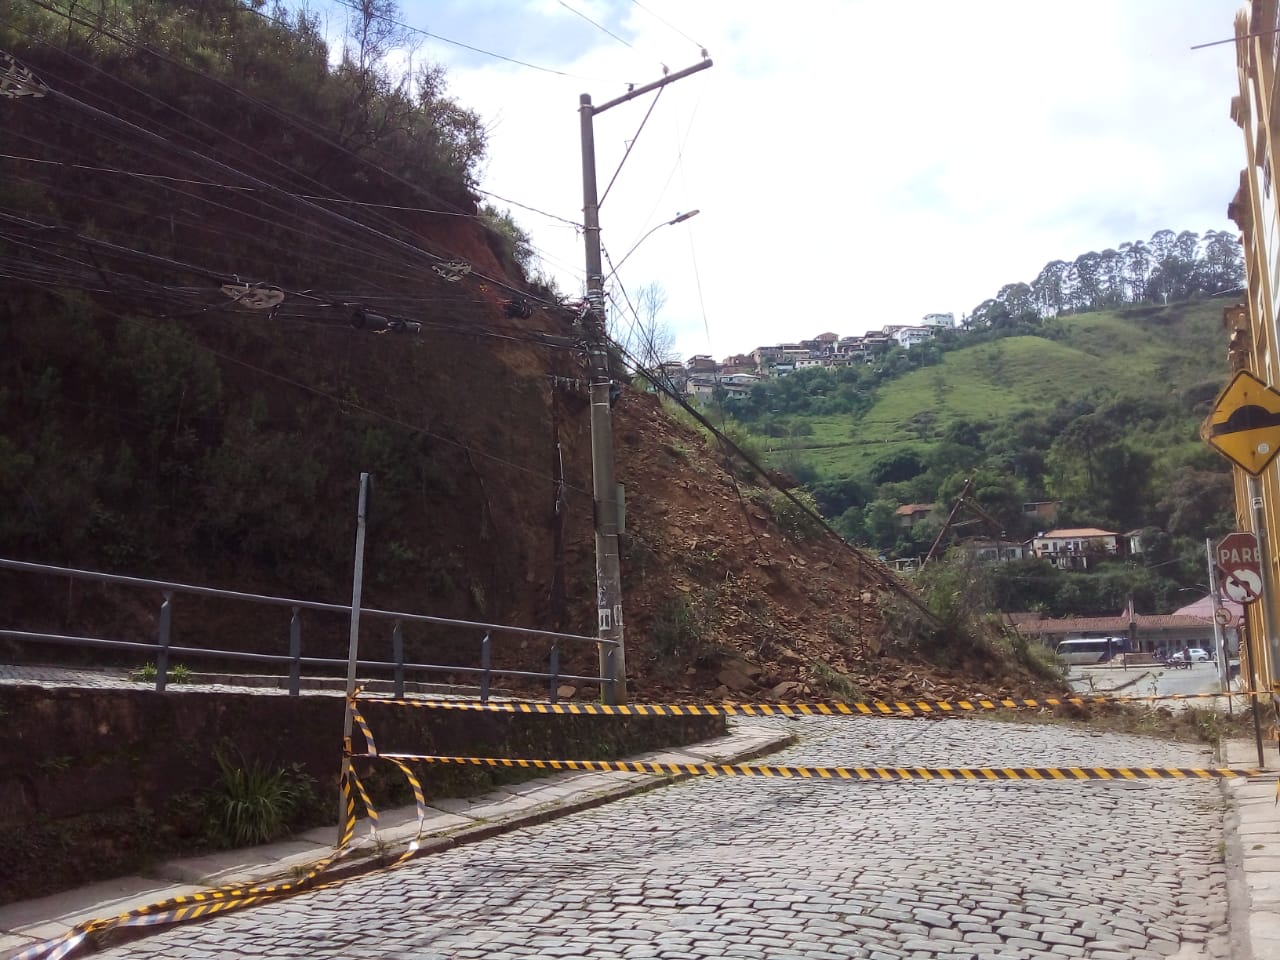 Deslizamento causa grande desabamento na Praça da Estação, em Ouro Preto; veja o vídeo